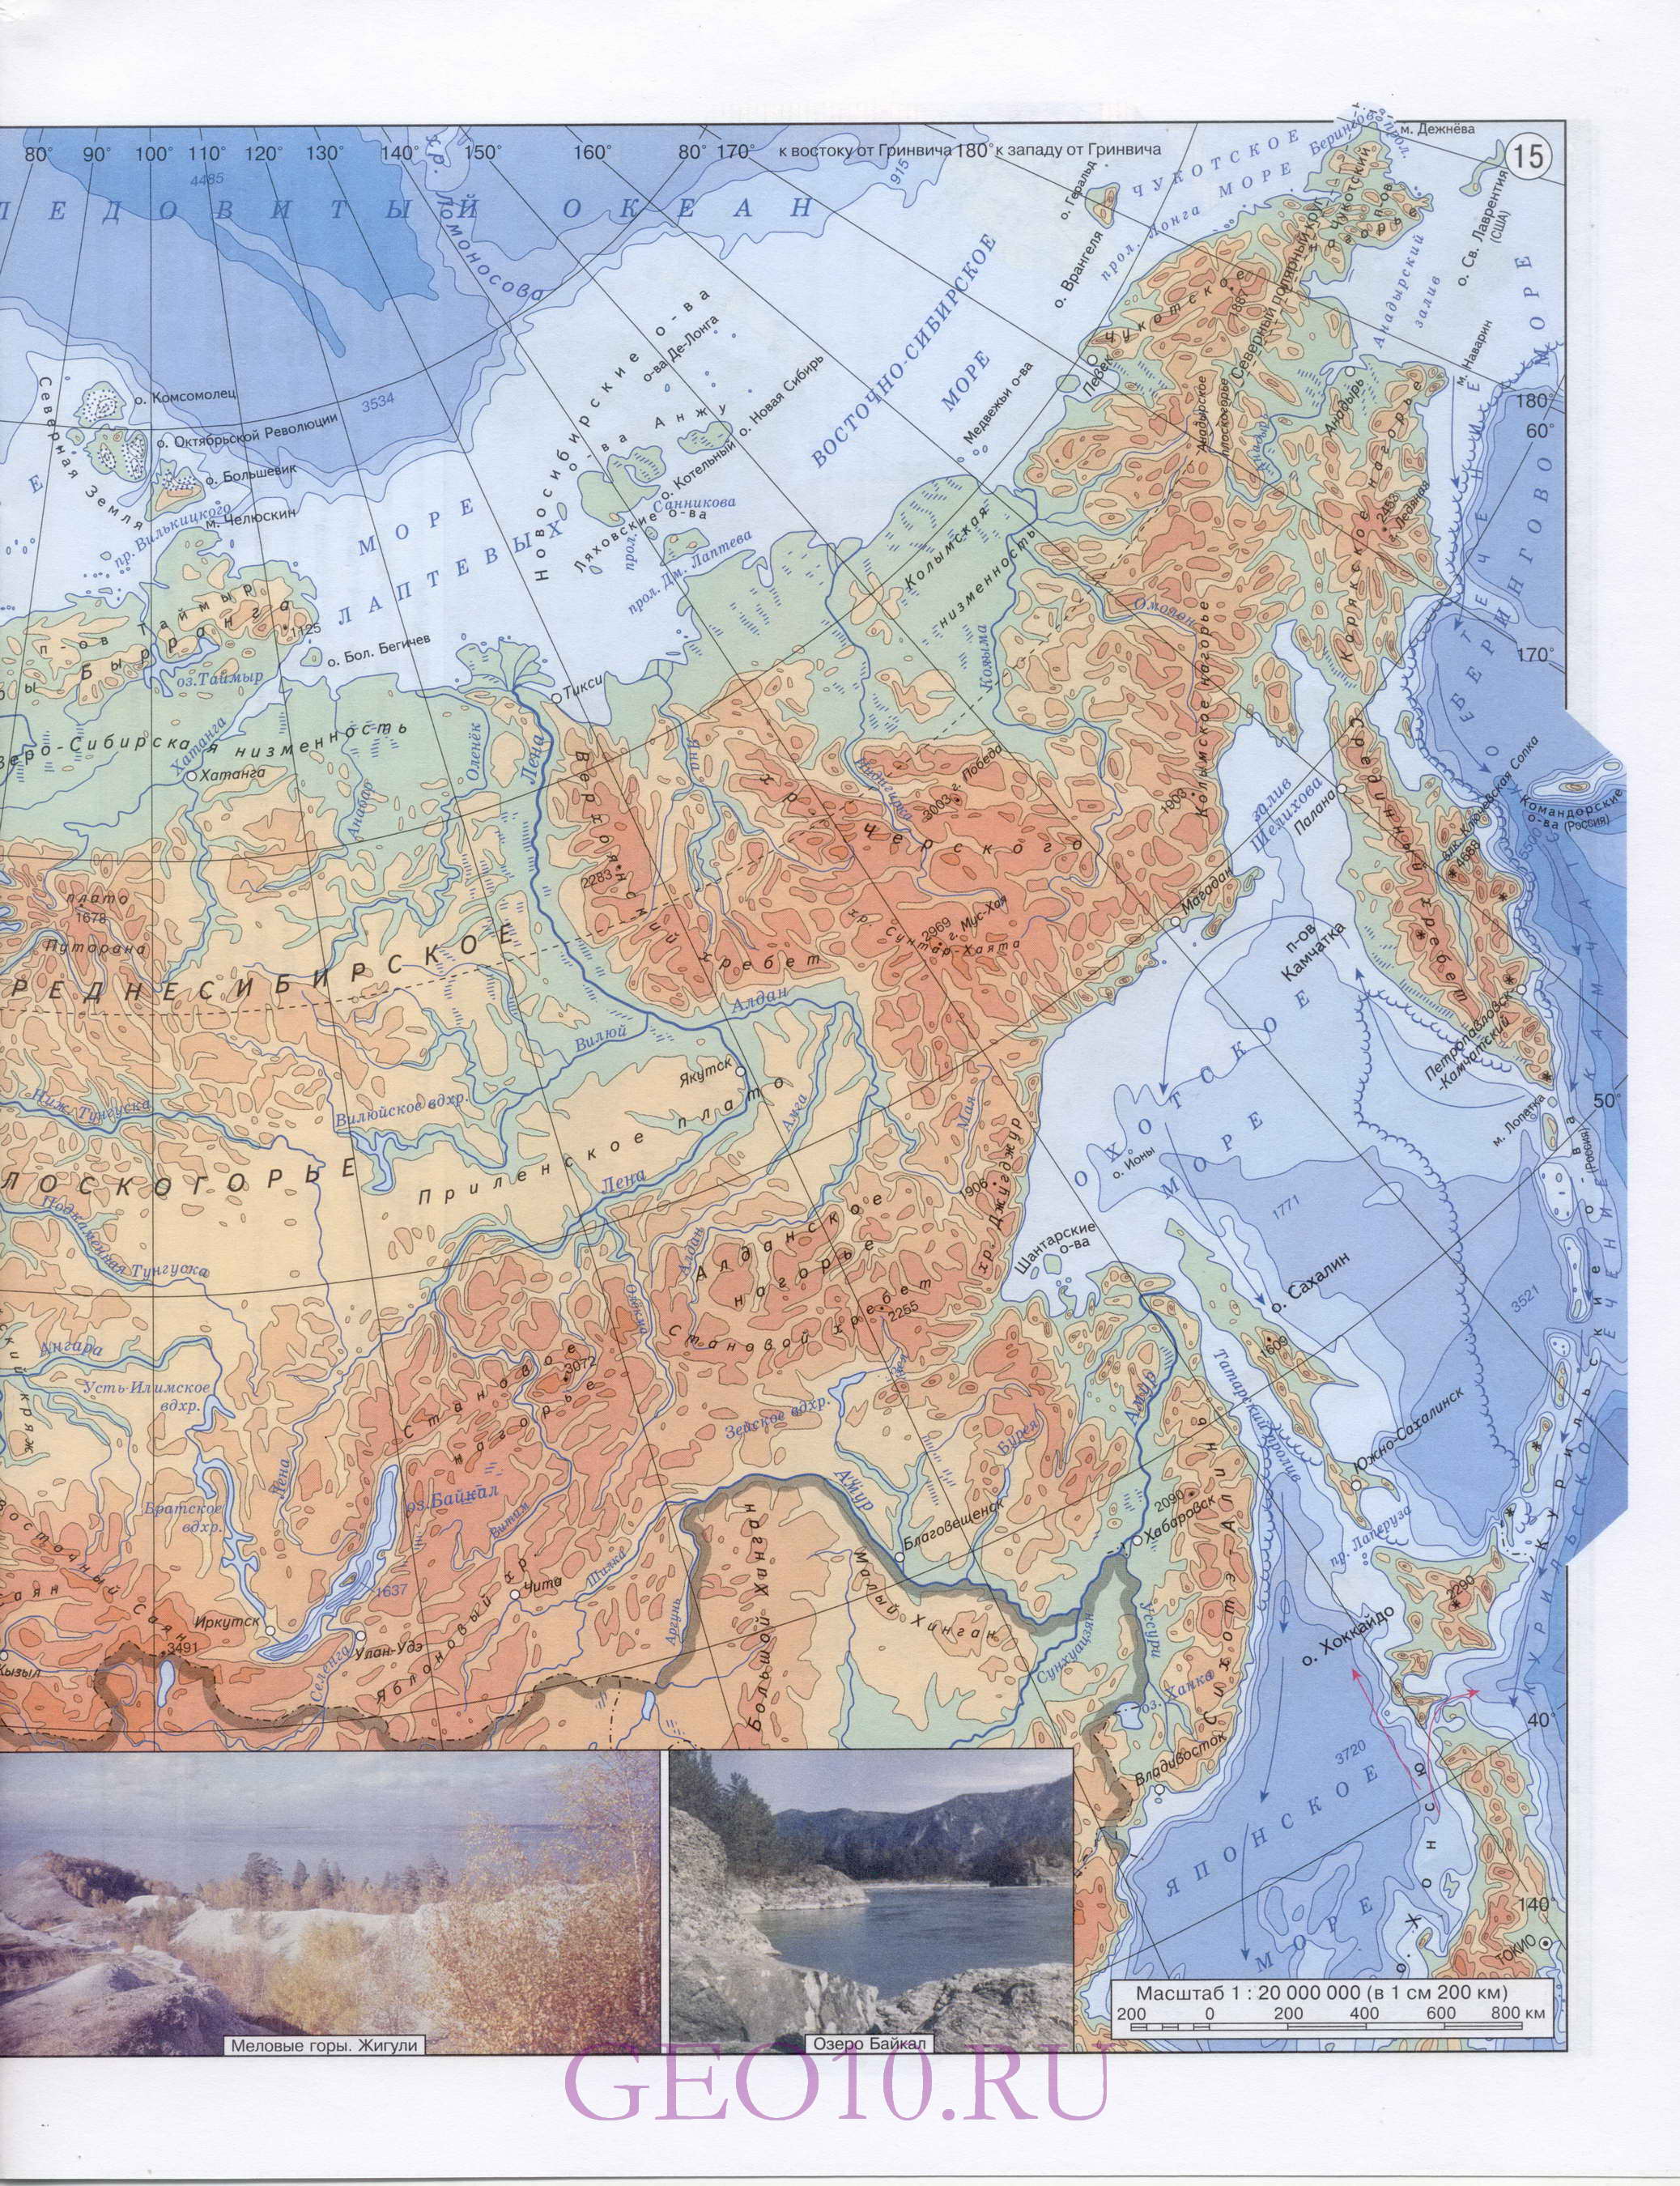 Класс географии. Контурная карта России. Карта зарубежной Европы. Контурнаякарта мира